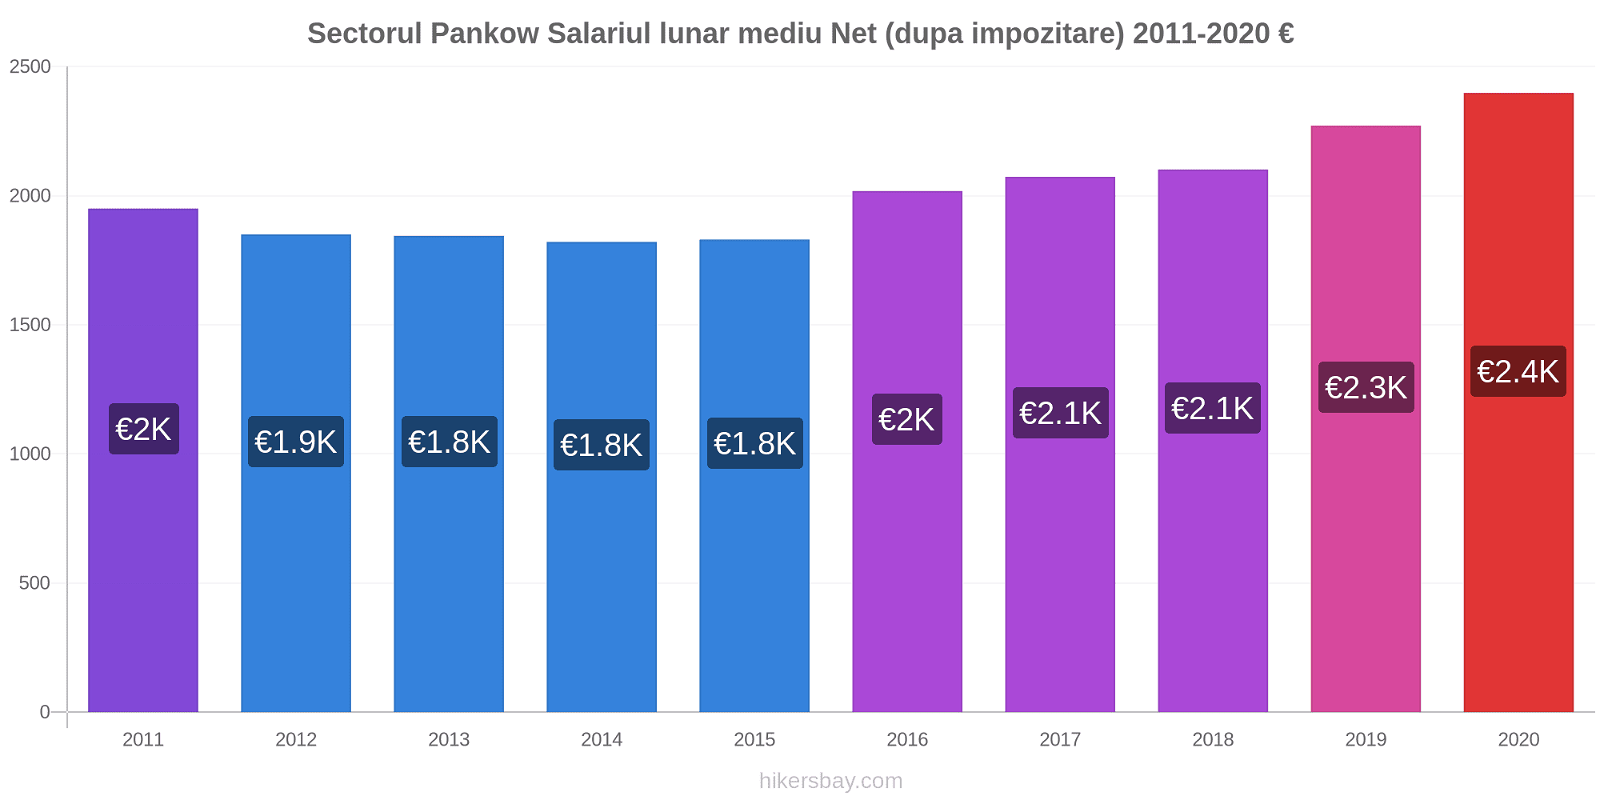 Sectorul Pankow modificări de preț Salariul lunar mediu Net (dupa impozitare) hikersbay.com